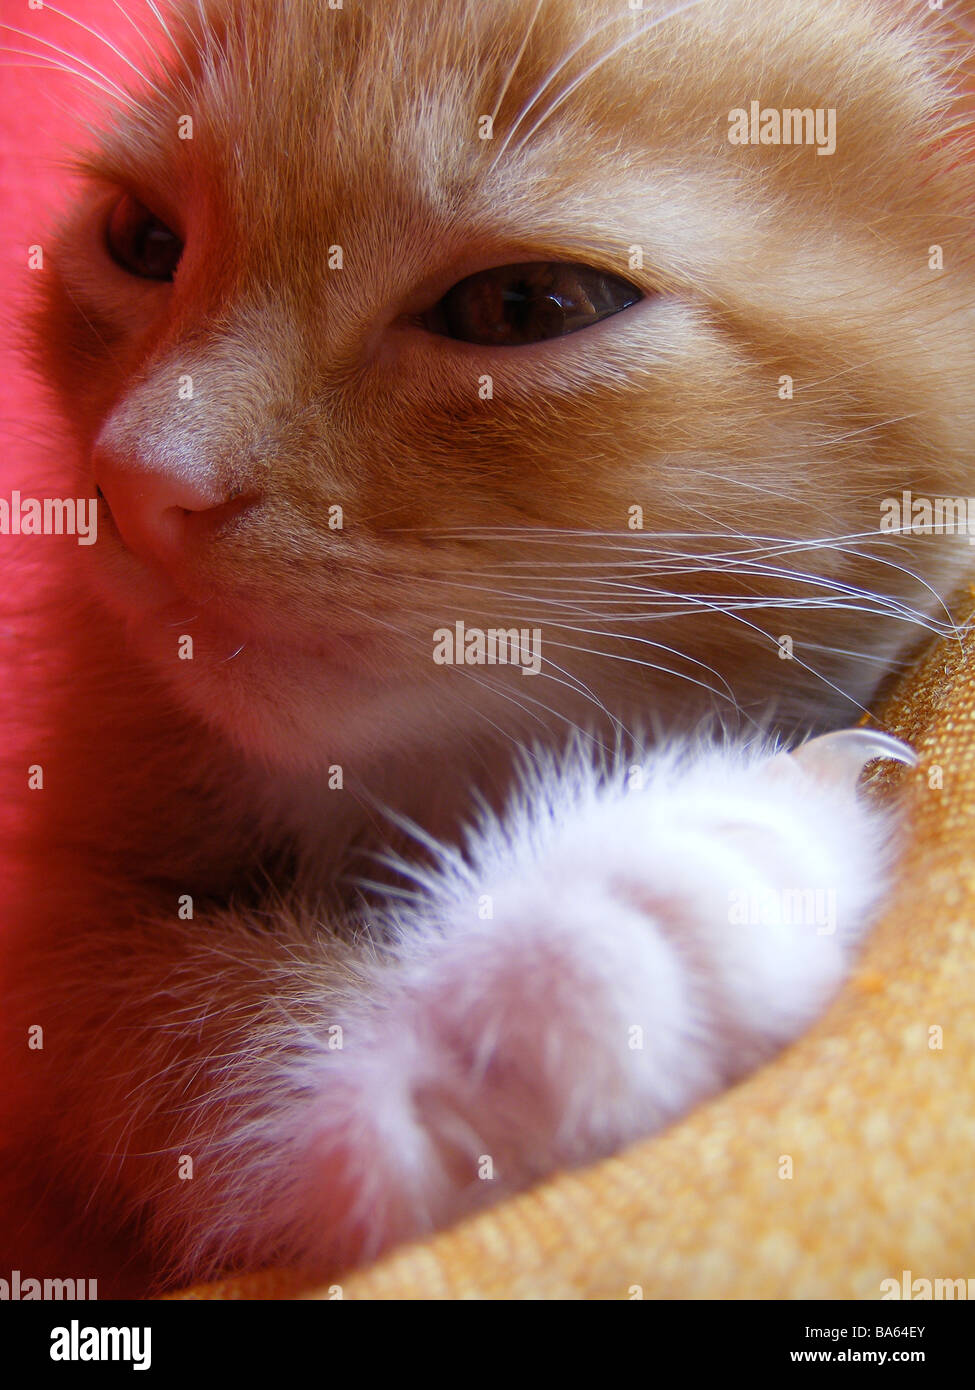 ginger kitten Stock Photo